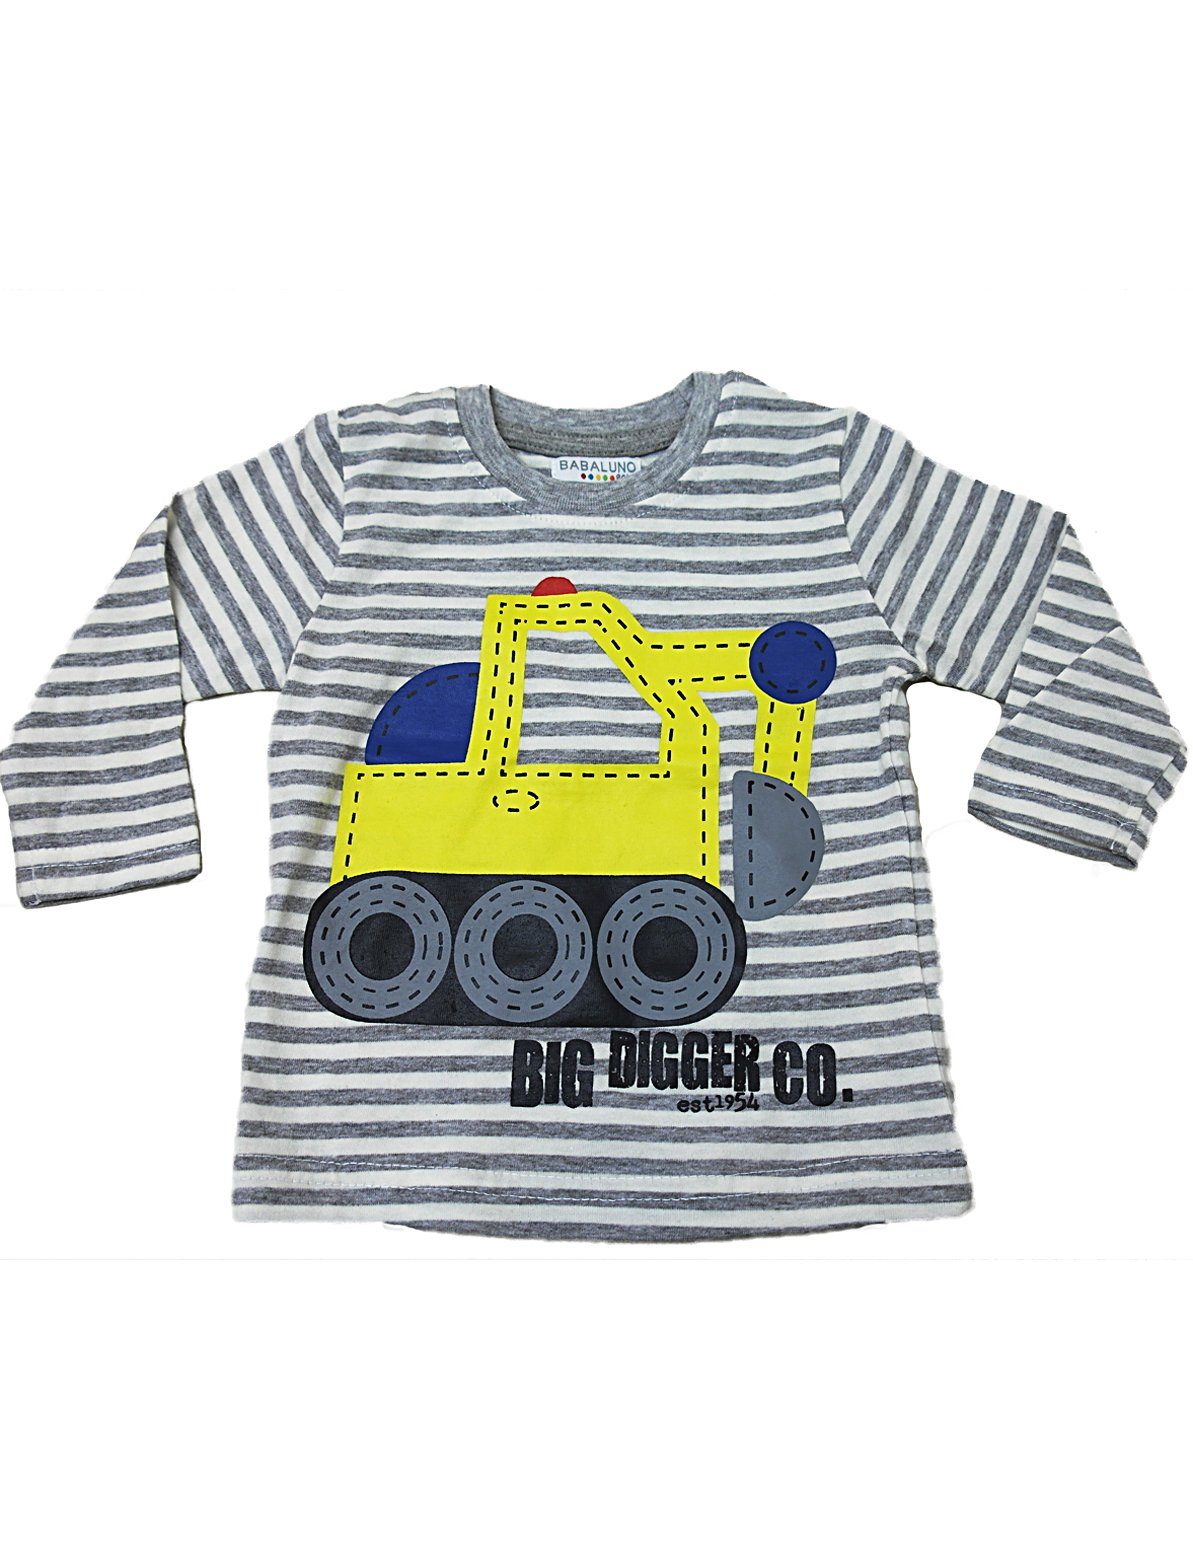 YESET Kinder Baby Digger-5 Shirt Langarm Grau-Weiss Langarmshirt Streifen